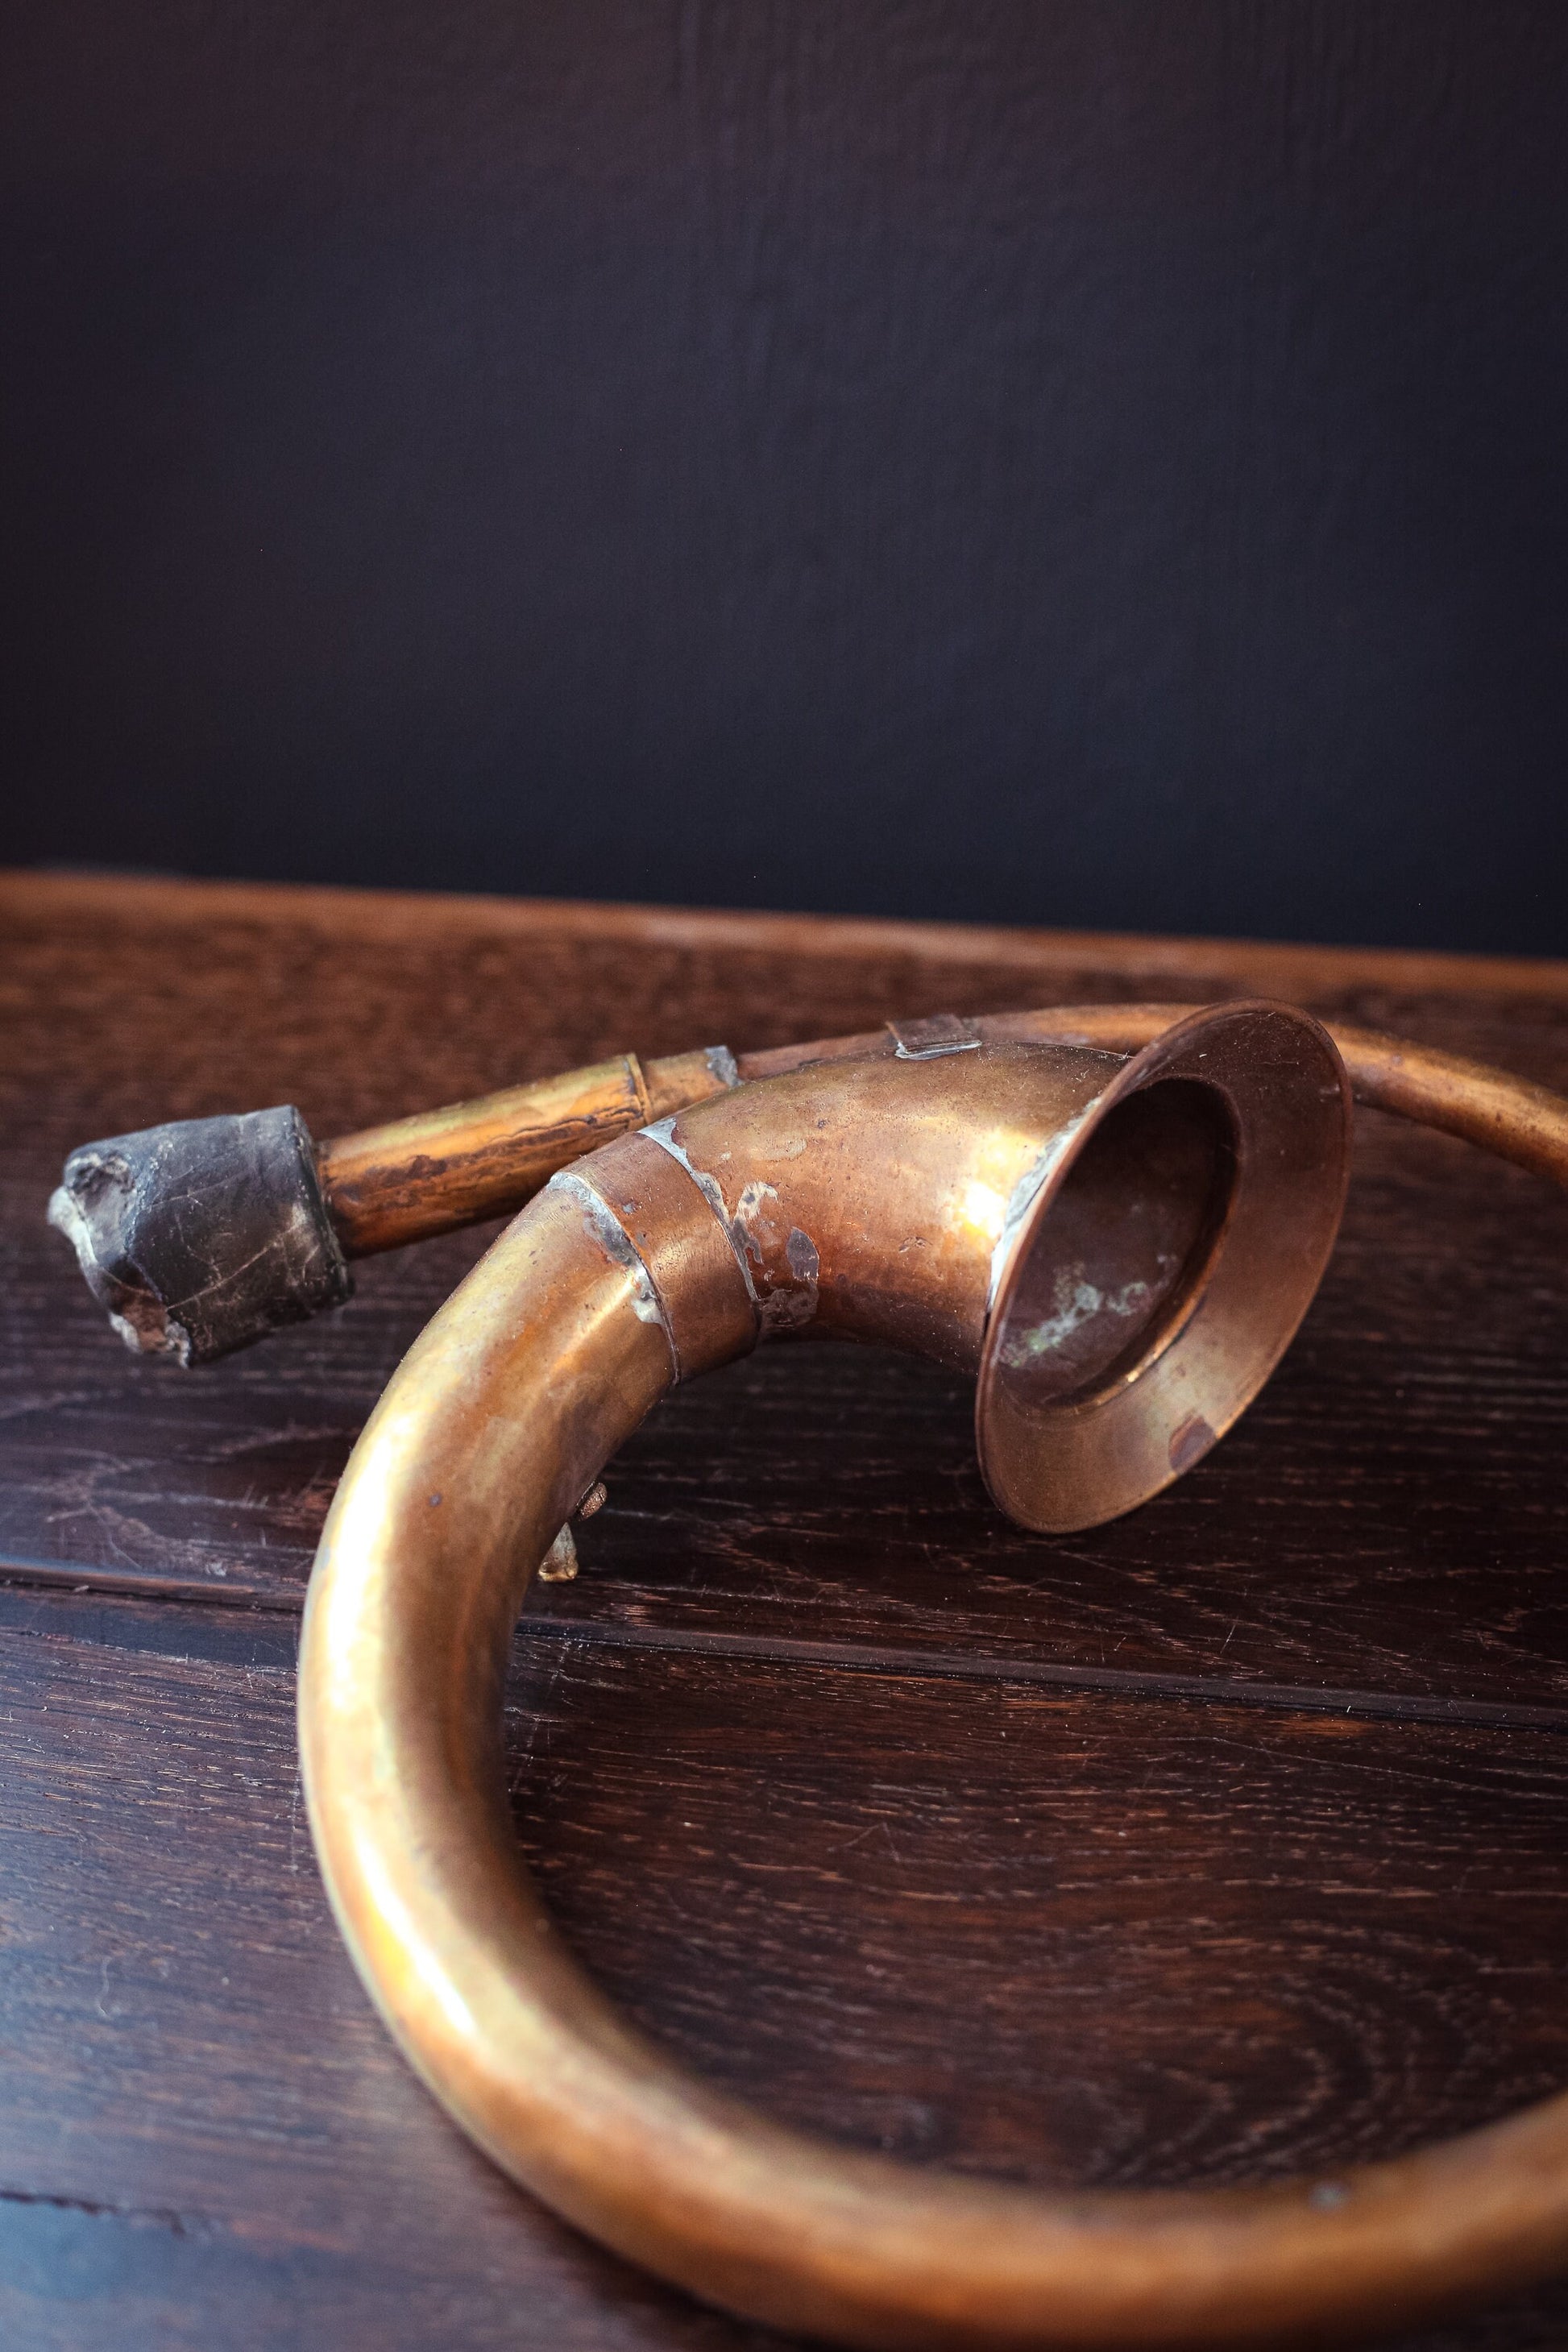 Antique Circular Brass Car Horn - Brass Automobile Horn